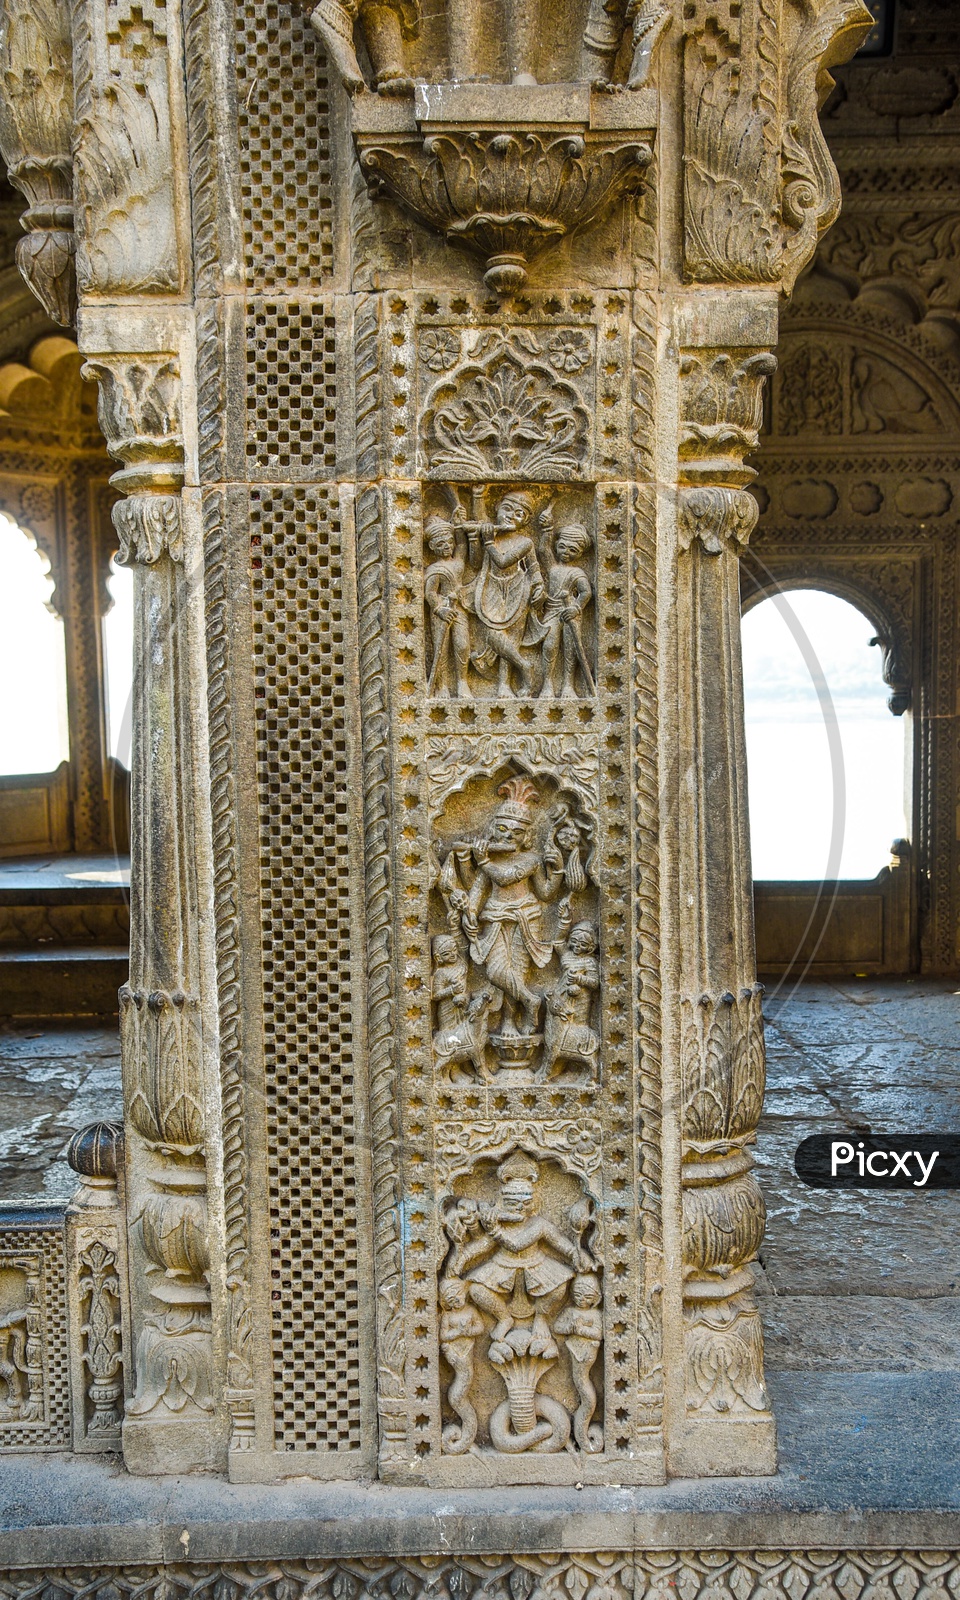 Exquisite Architecture of Maheshwar Fort